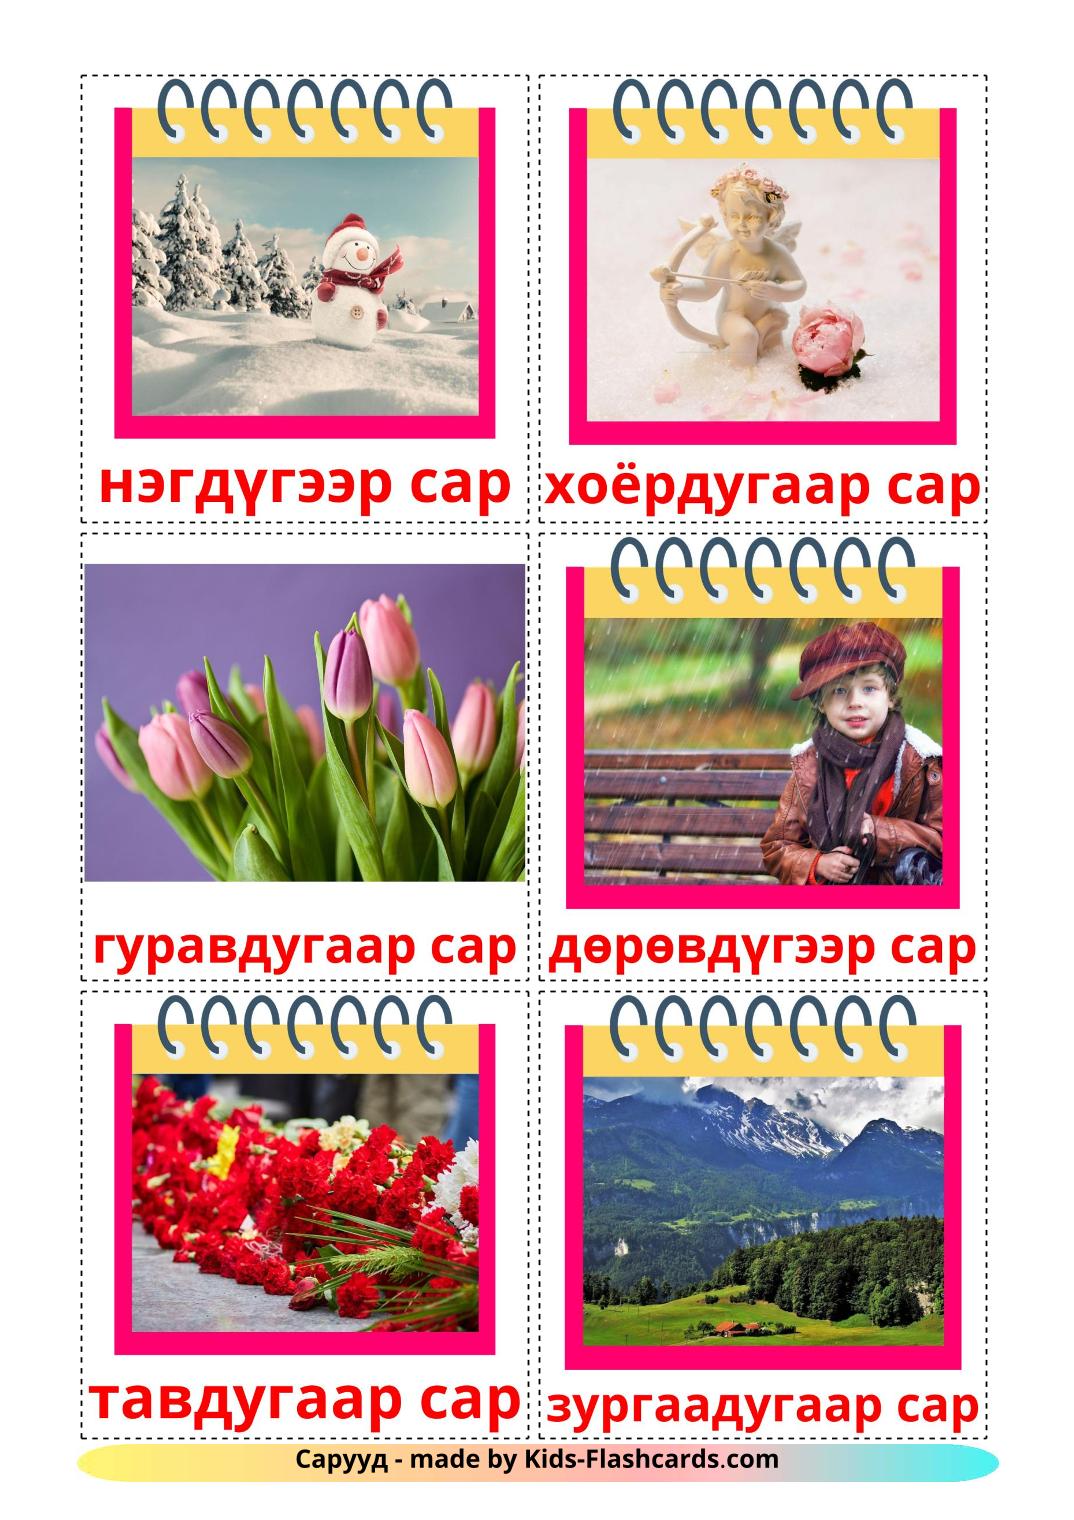 Meses do ano - 12 Flashcards mongoles gratuitos para impressão